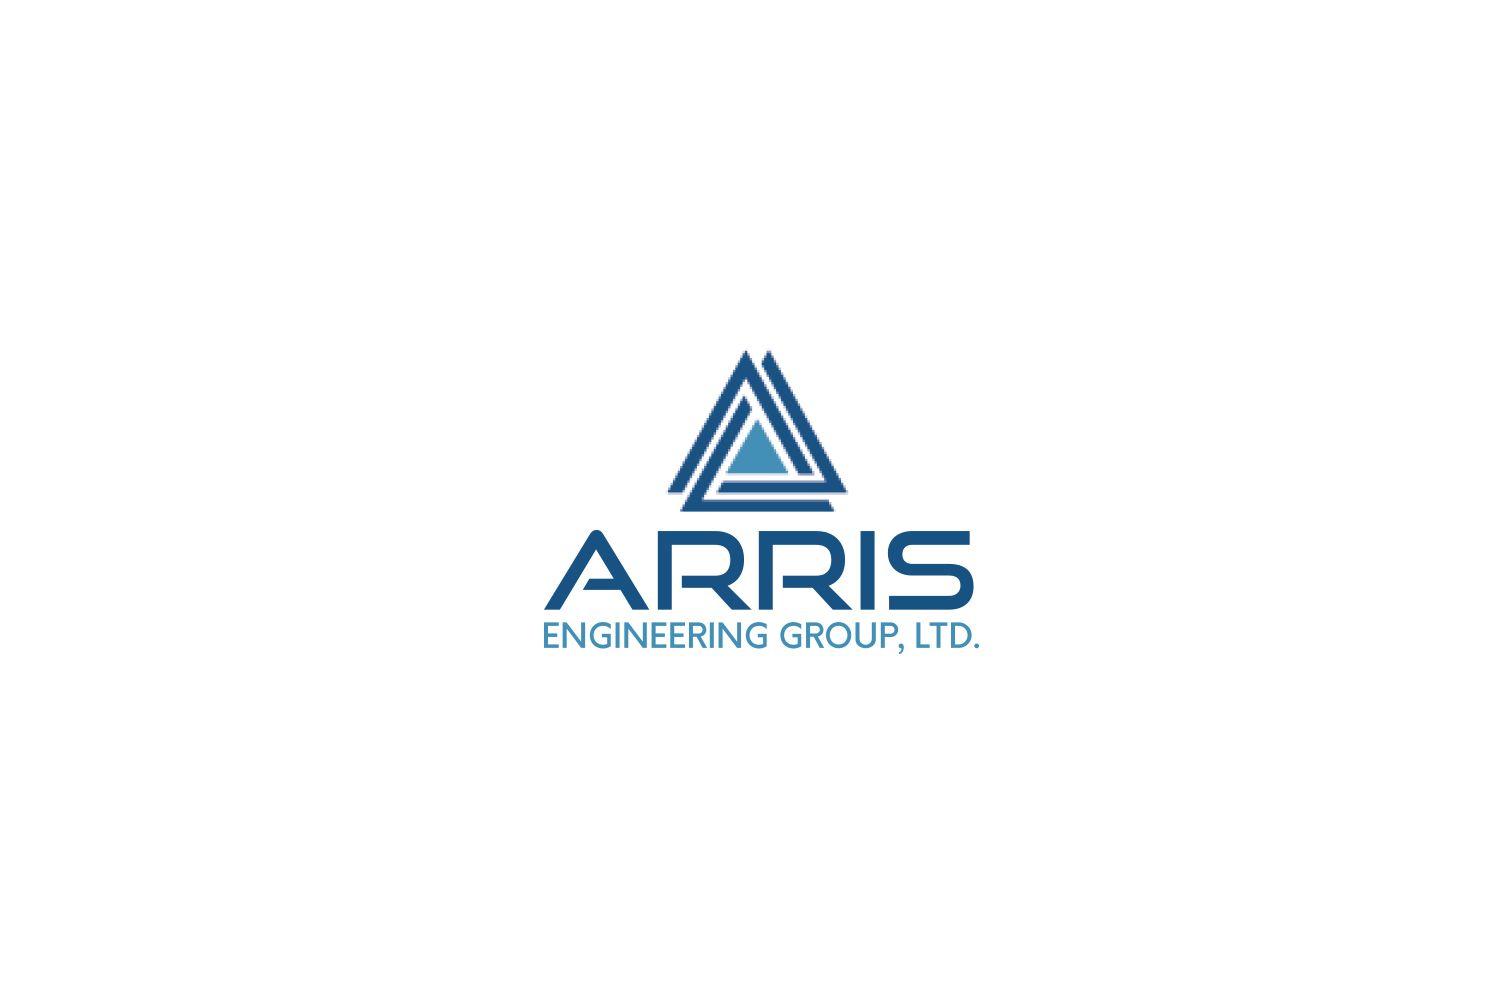 Arris Logo - Elegant, Playful, Business Logo Design for Arris Engineering Group